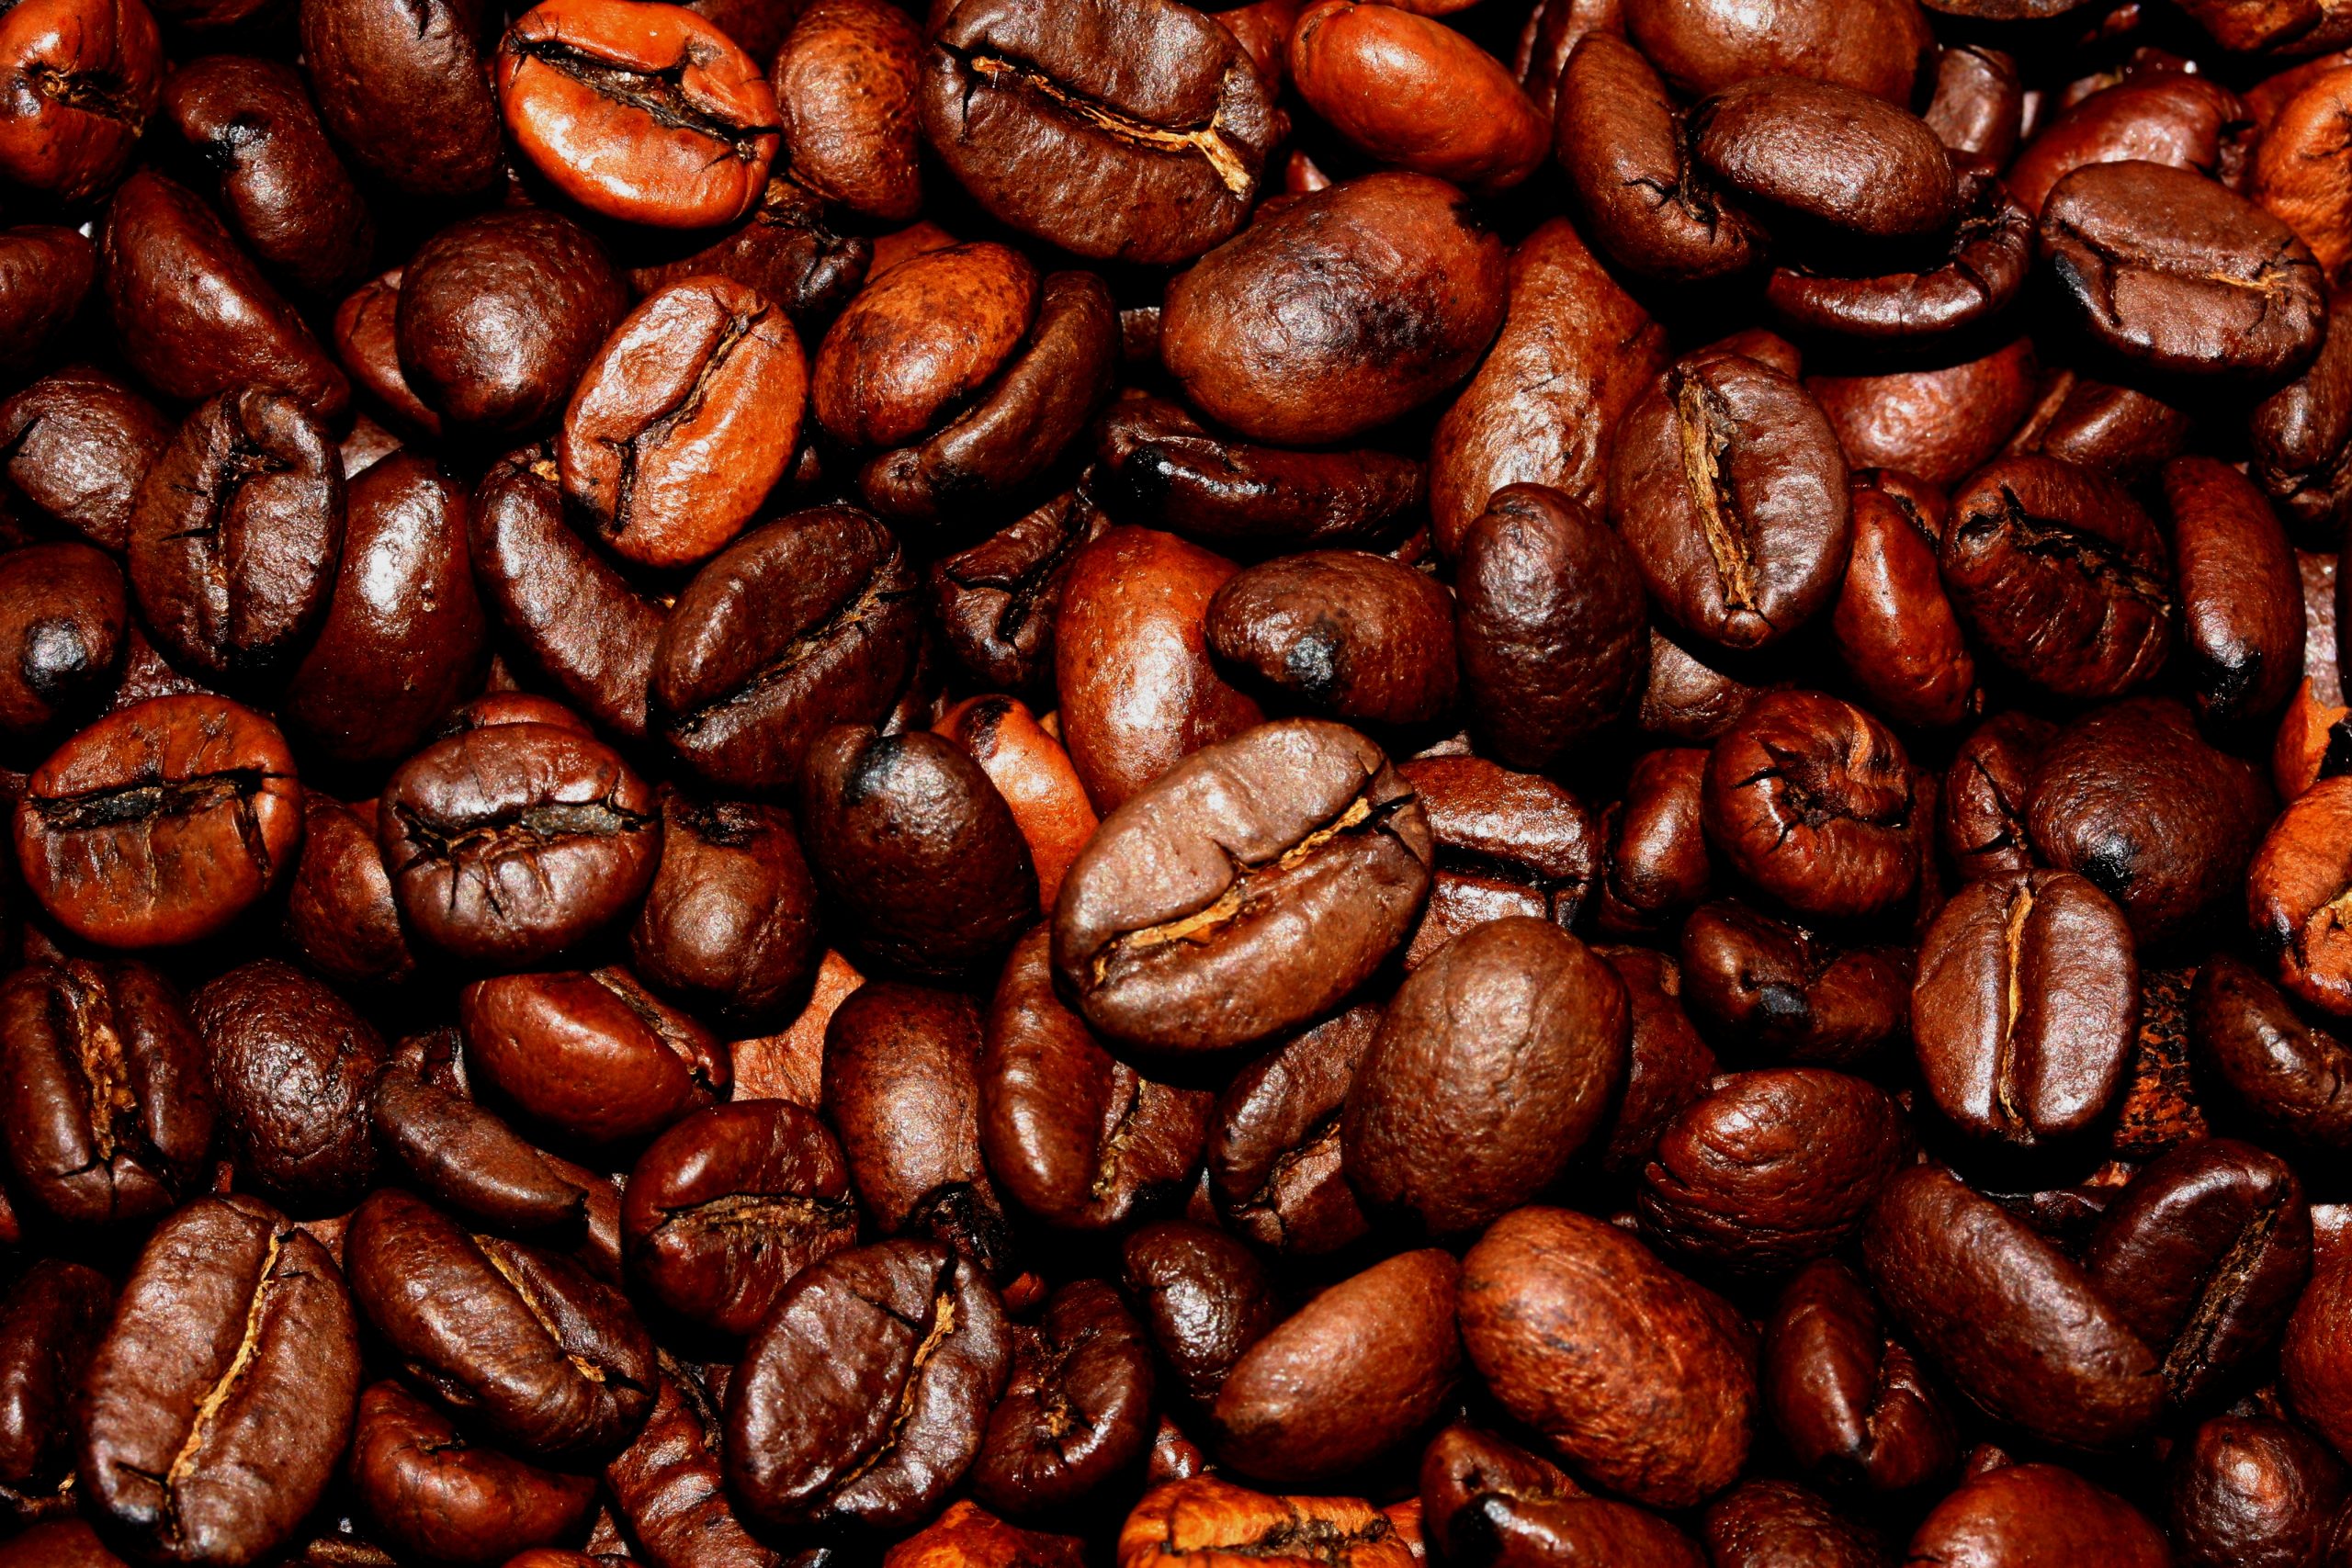 Coffee Varieties across the Caribbean